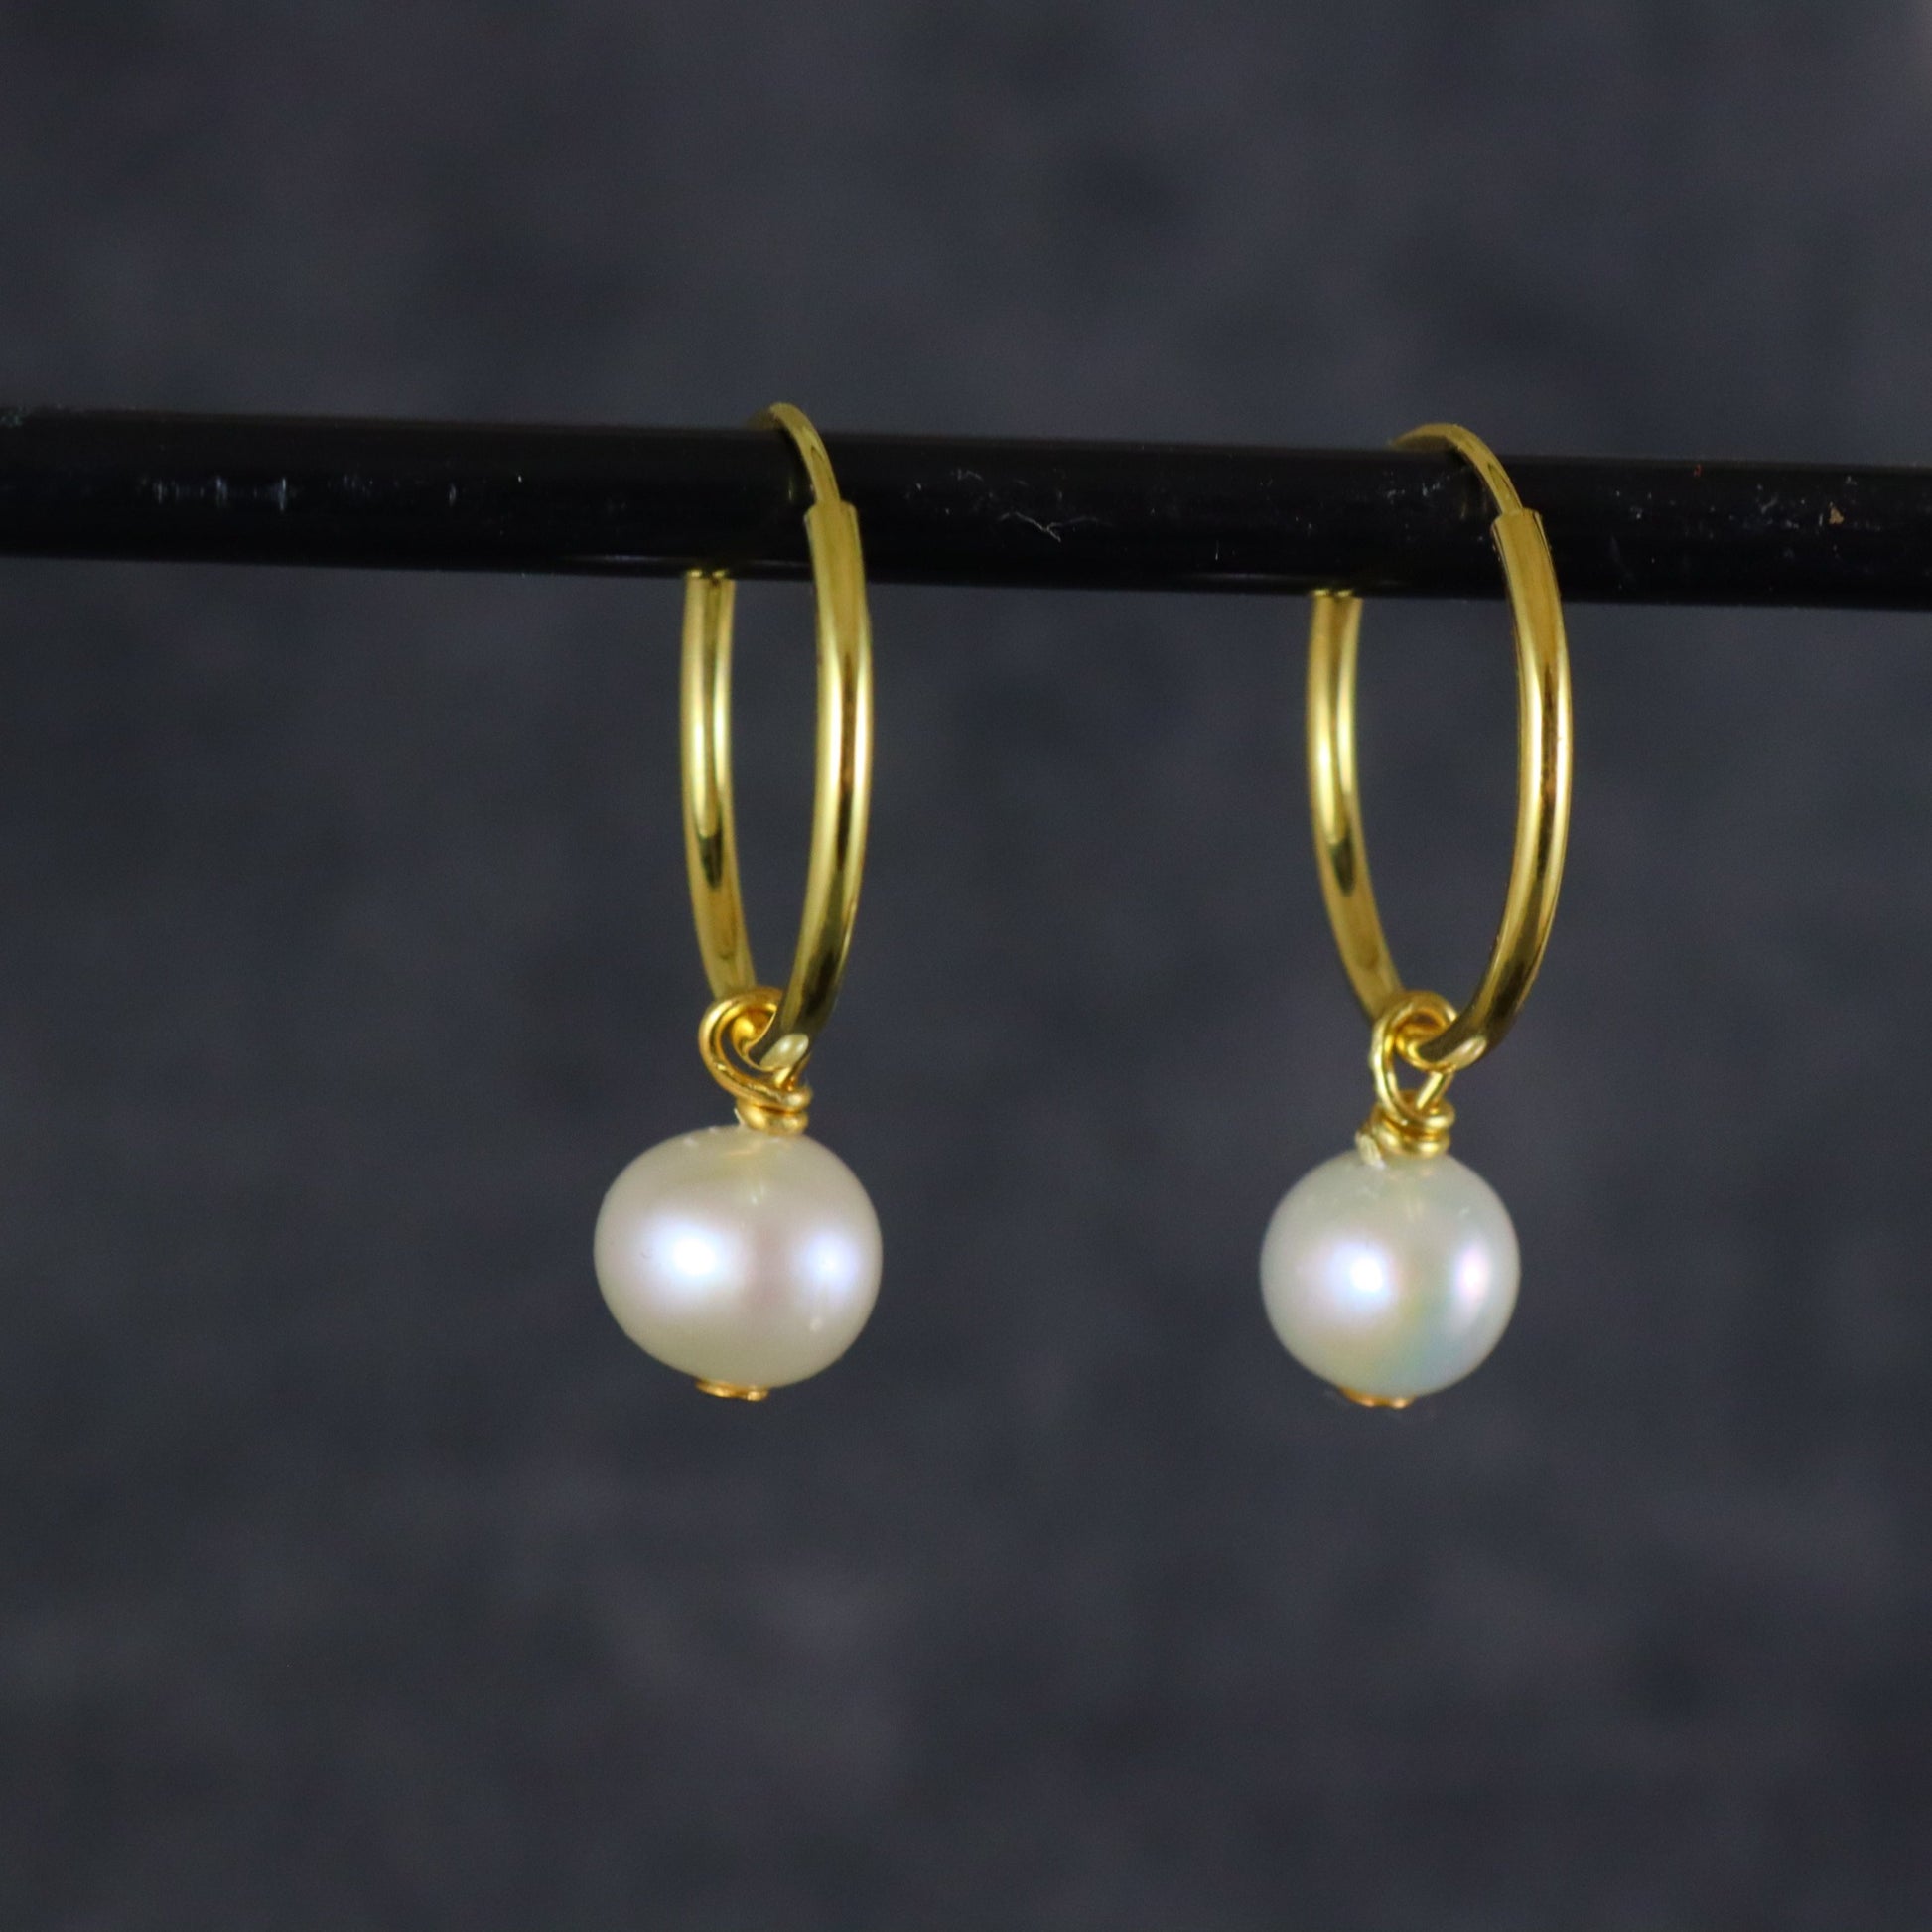 Pearl Hoop Earrings - Karen Morrison Jewellery